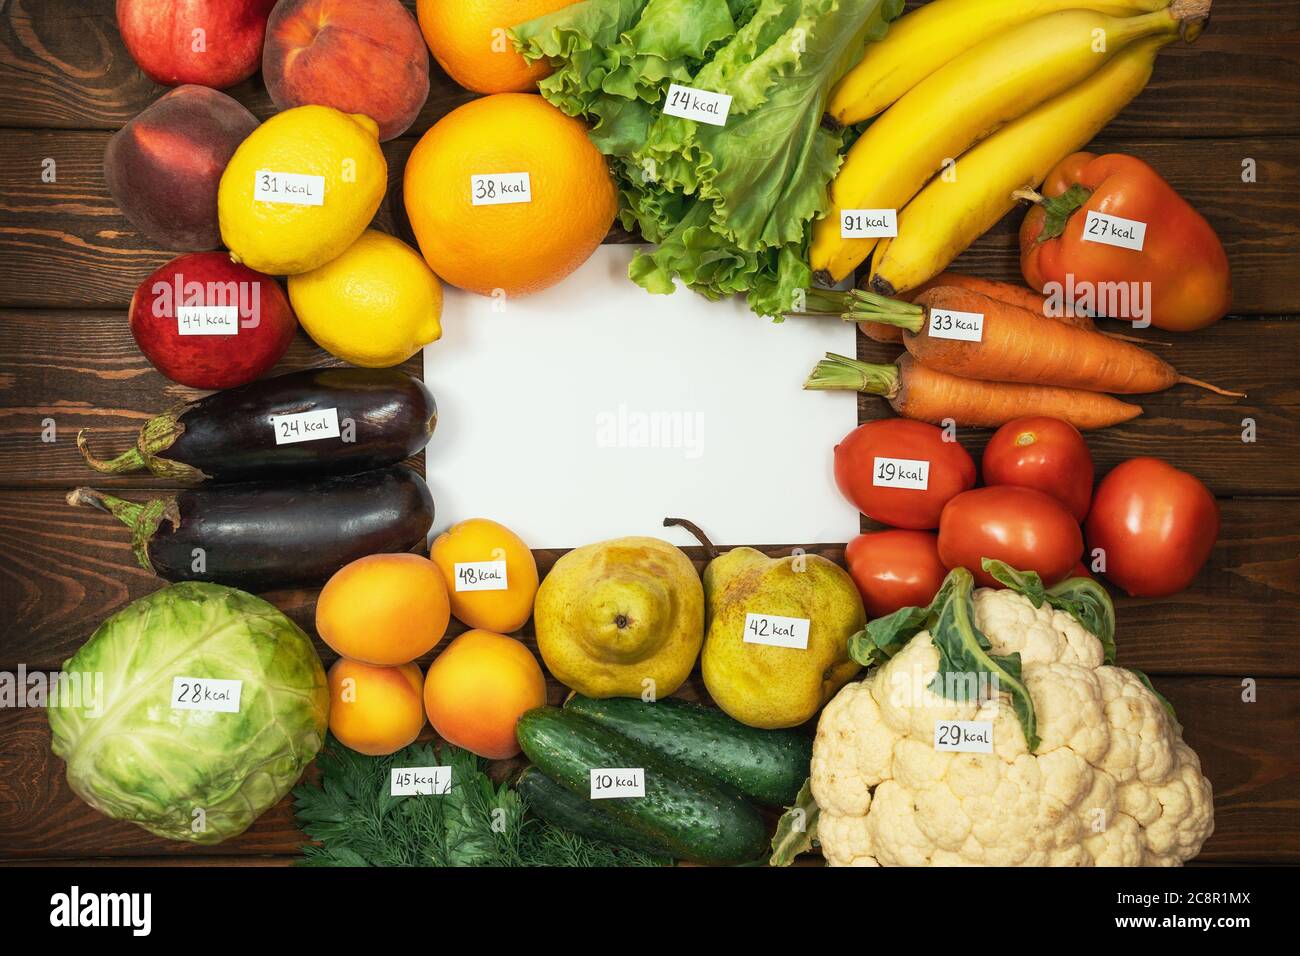 Diversi tipi di frutta e verdura crude con etichette calorie su tavola di legno e carta bianca vuota come spazio di copia per il tuo testo. Dieta, cibo sano biologico vegetariano concetto. Foto Stock